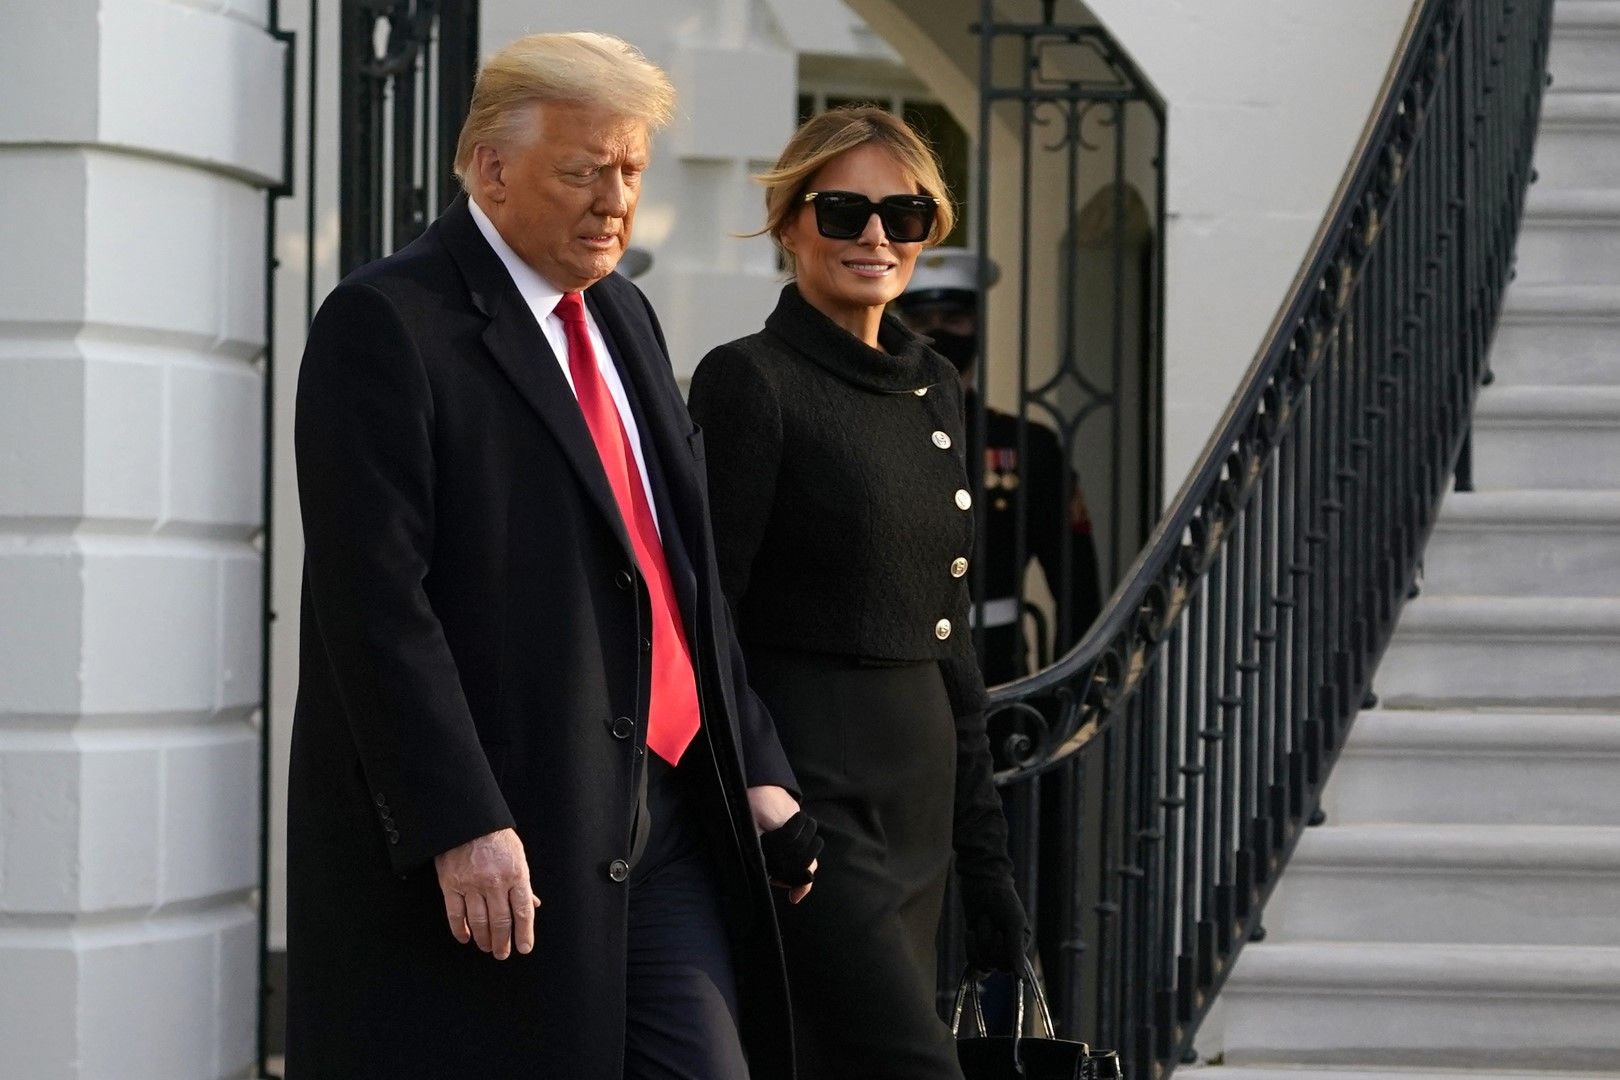 Доналд Тръмп и Мелания Тръмп напускат Белия дом и заминават за имението си във Флорида